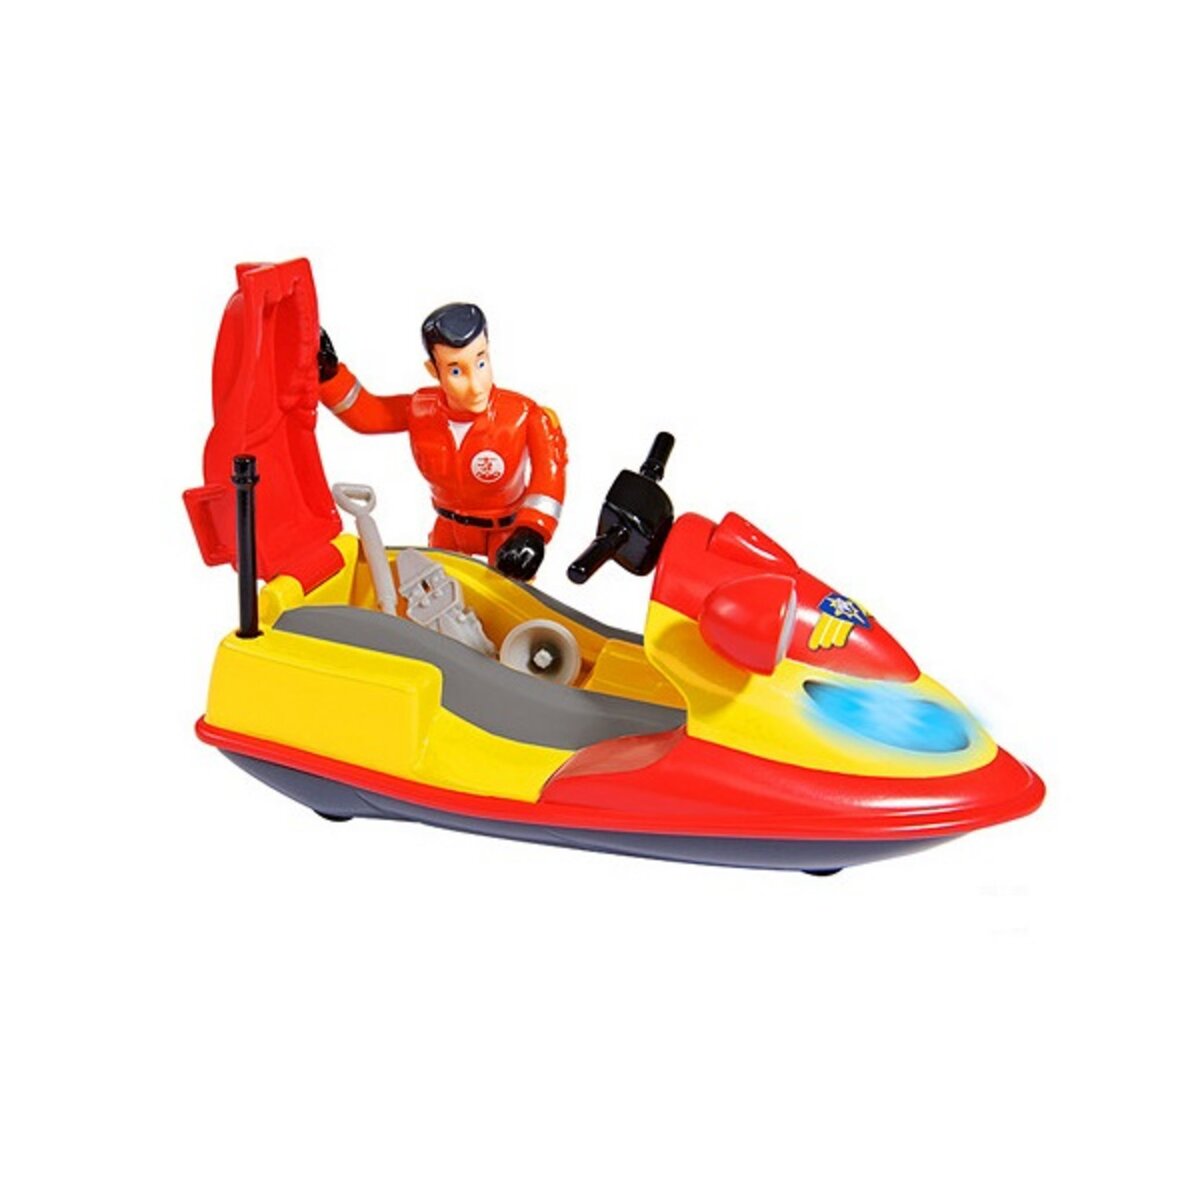 SMOBY Sam le pompier Jet ski Junon avec figurine Elvis 